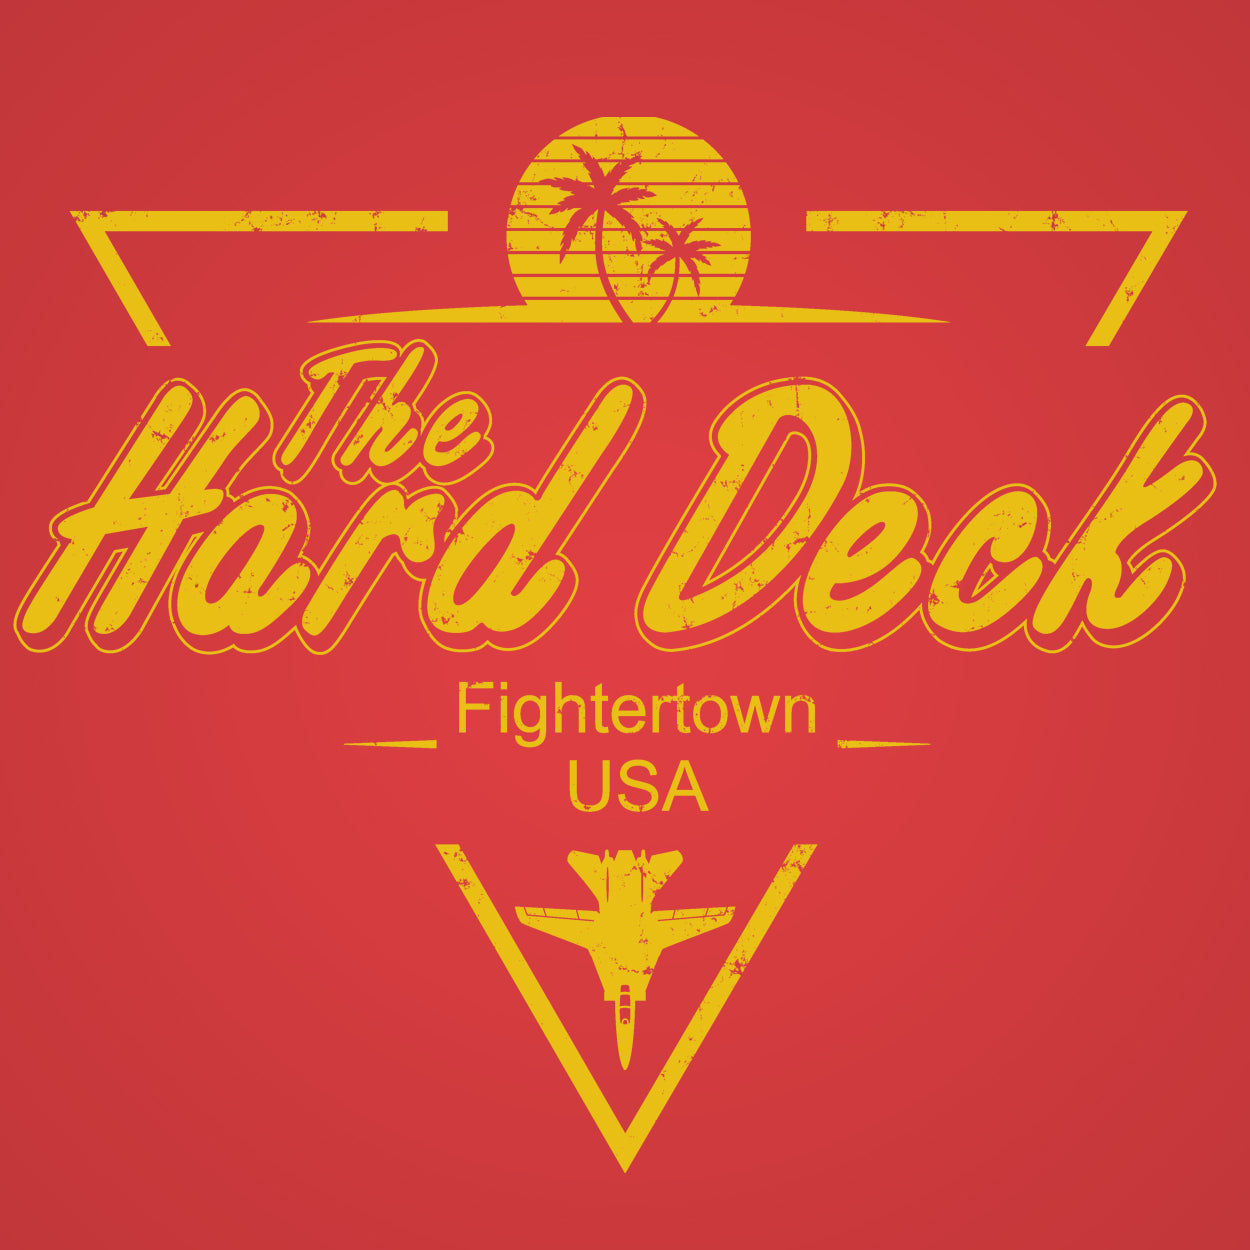 The Hard Deck Bar